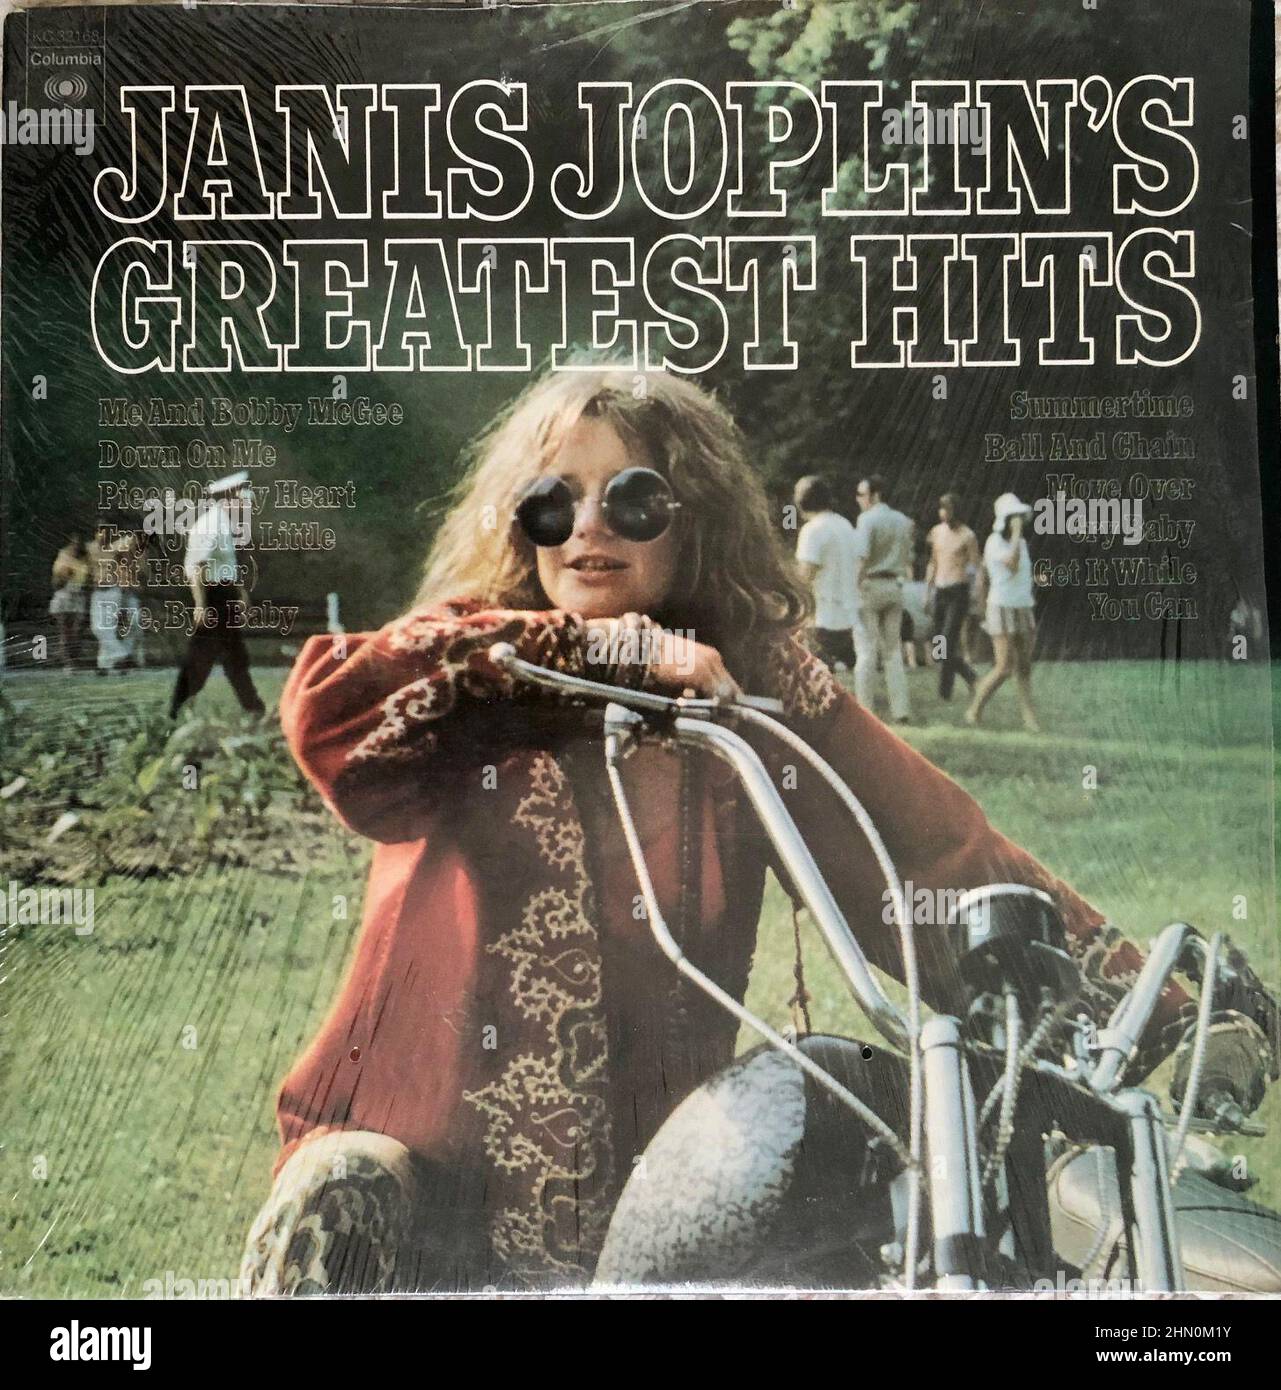 Janis Joplin Greatest Hits album, 1973, cover di album rock, album classici in vinile rock degli anni '1970 DELLA CULTURA GIOVANILE, copertine vintage Foto Stock